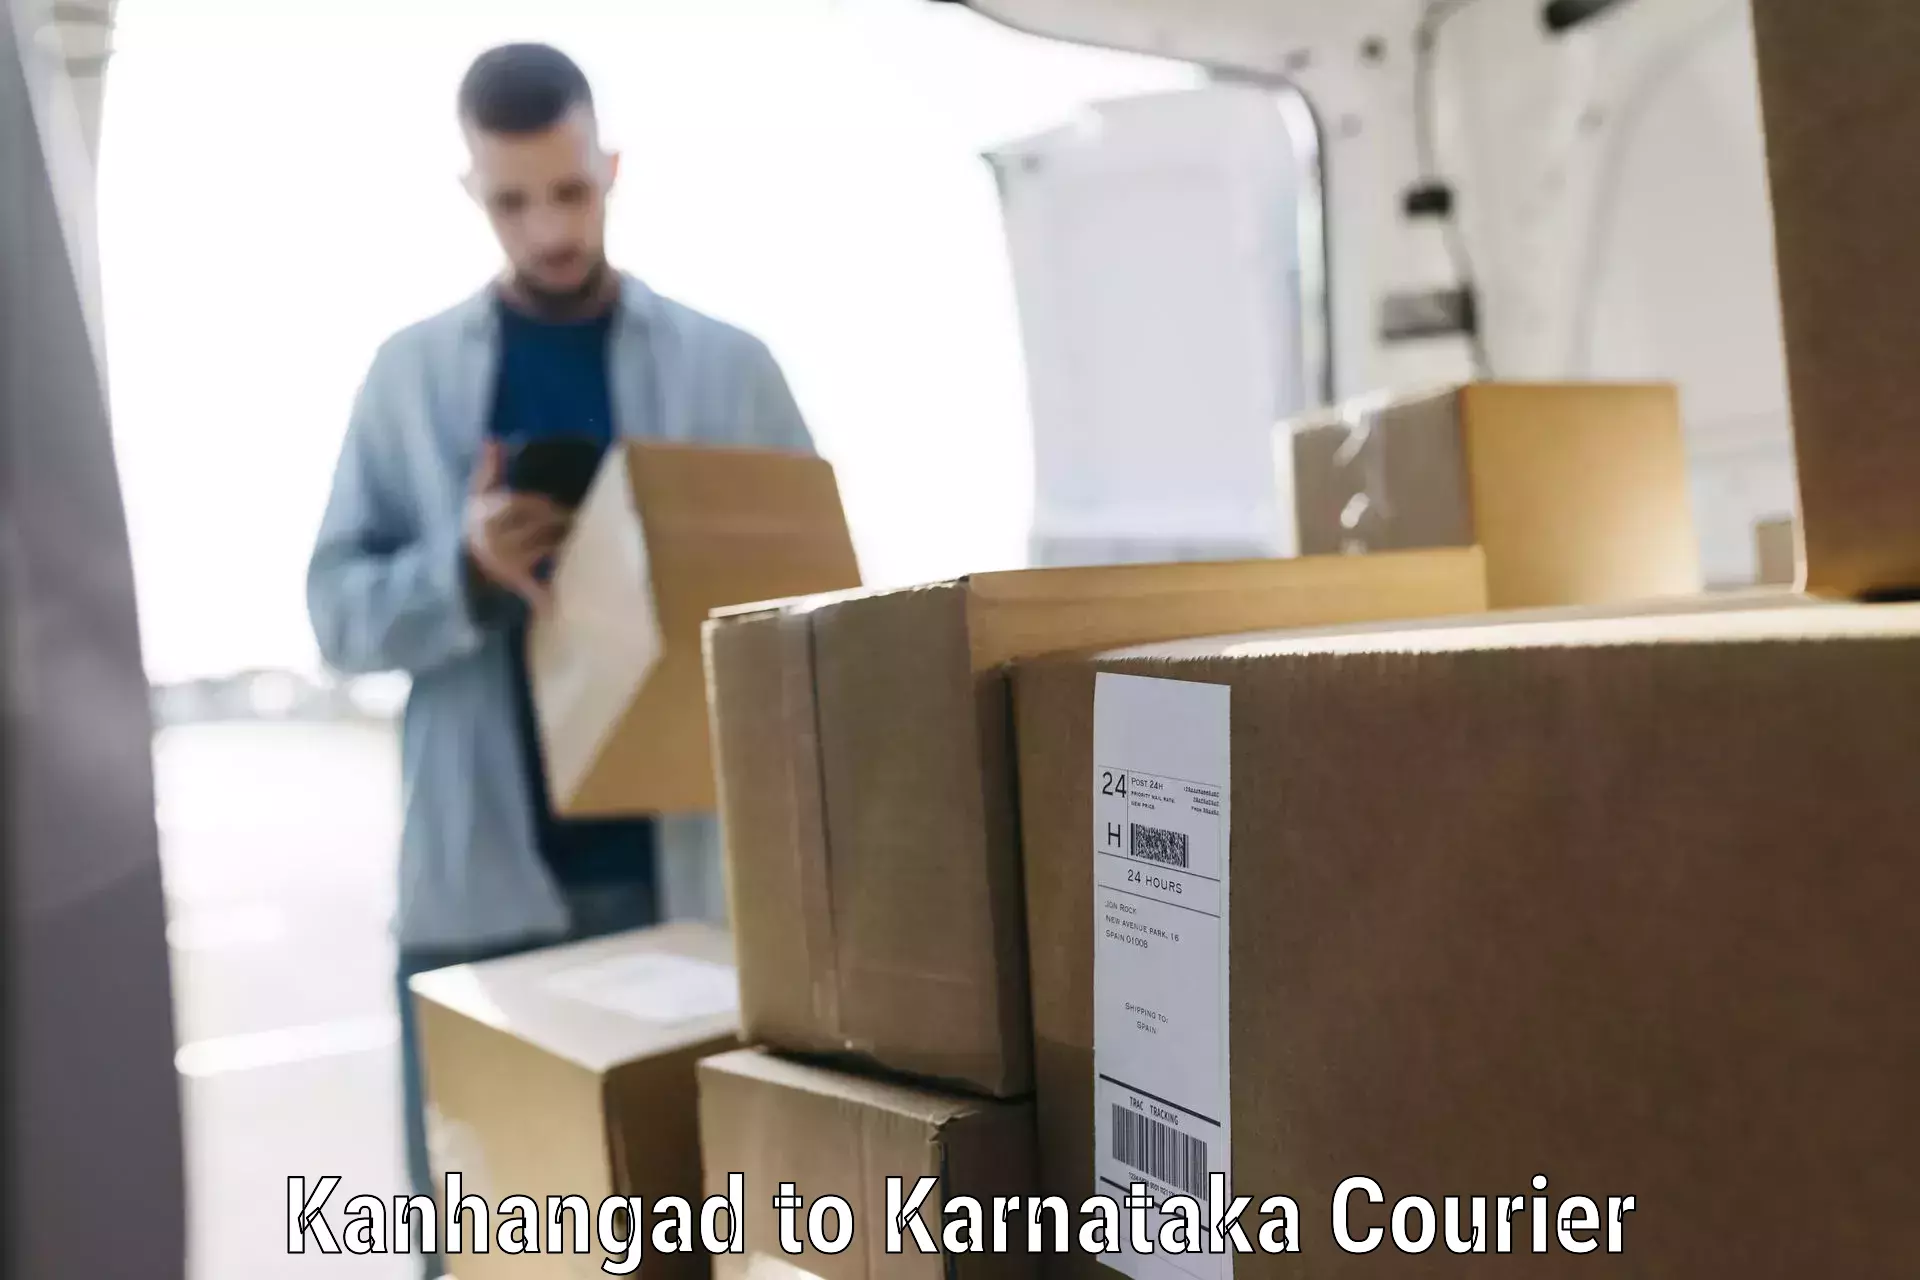 Baggage transport scheduler Kanhangad to Mandya